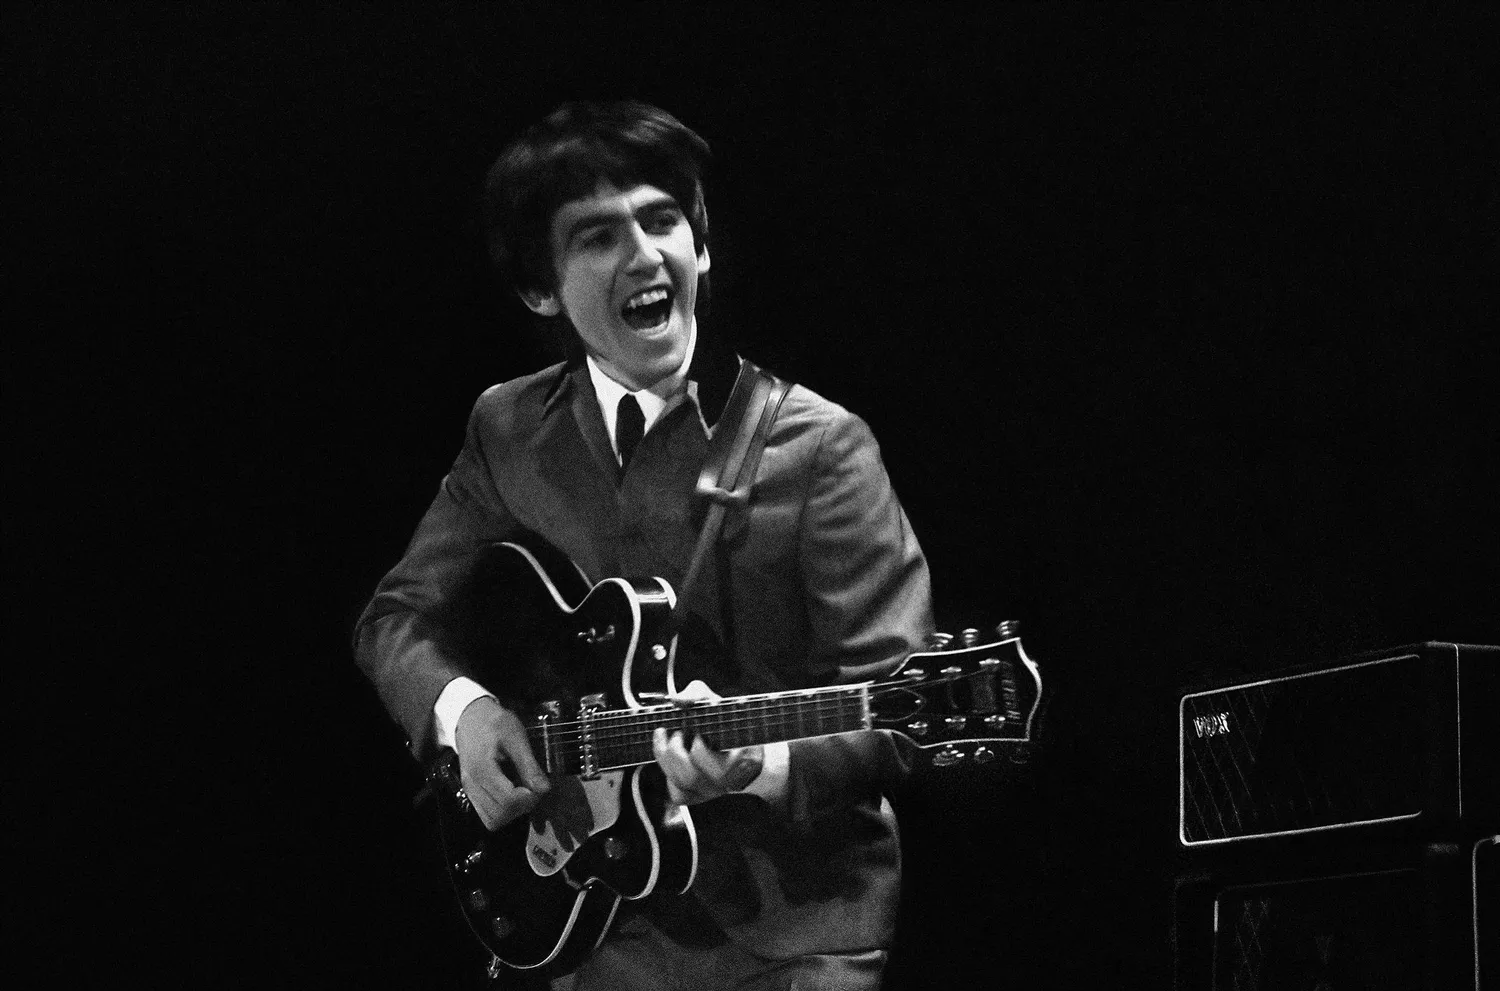 Paul McCartney og Ringo Starr hylder George Harrison - på 20-årsdagen for hans død